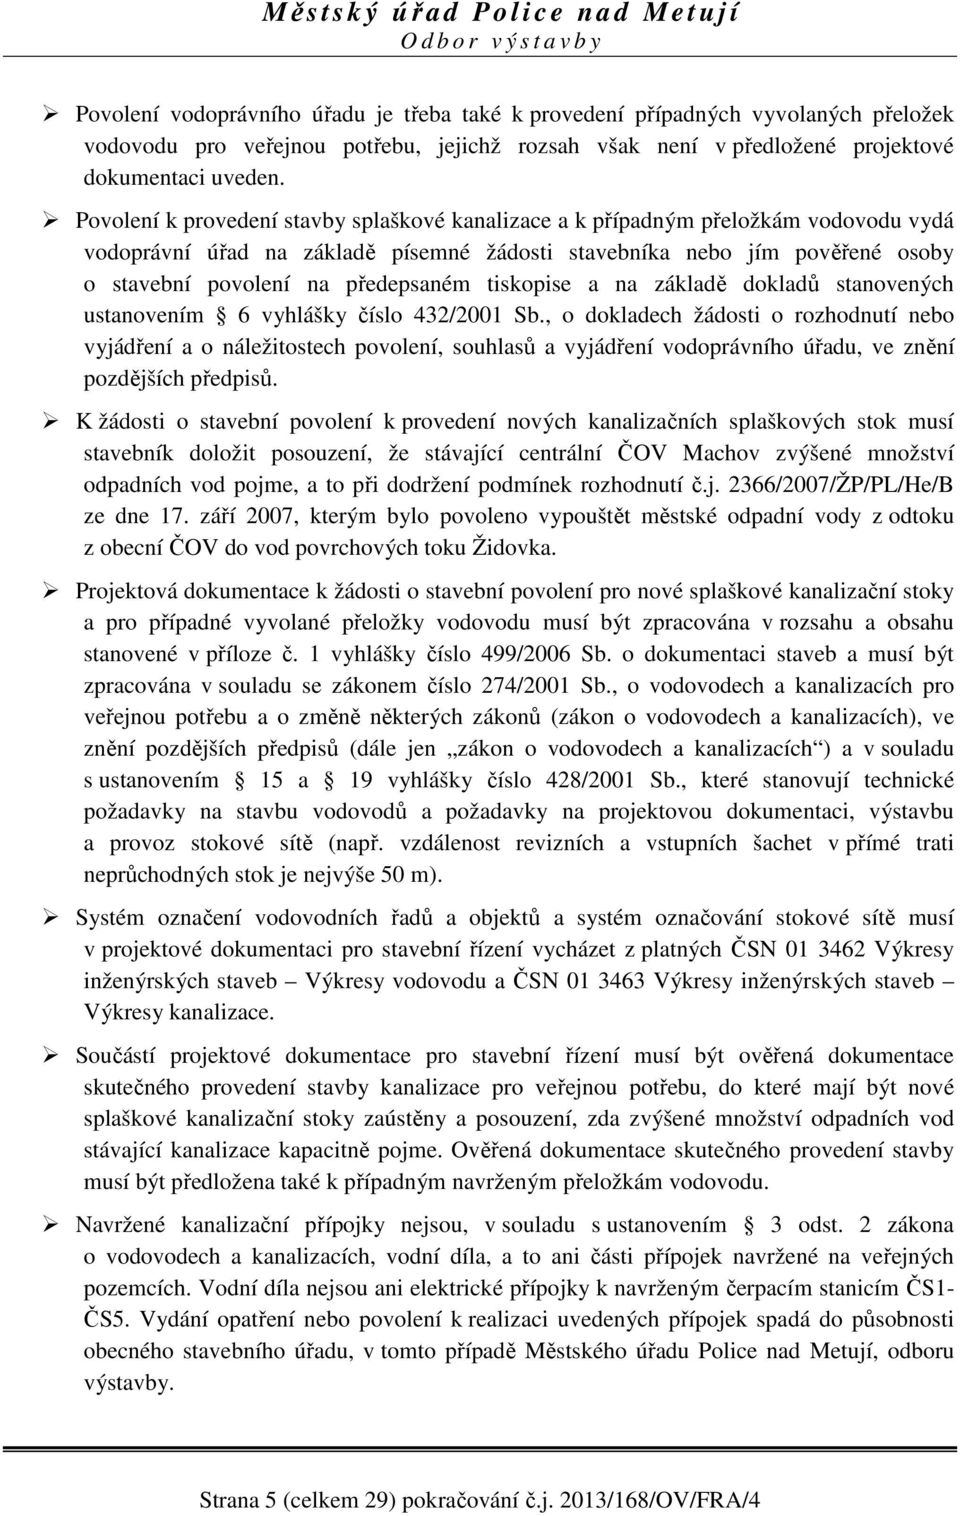 tiskopise a na základě dokladů stanovených ustanovením 6 vyhlášky číslo 432/2001 Sb.